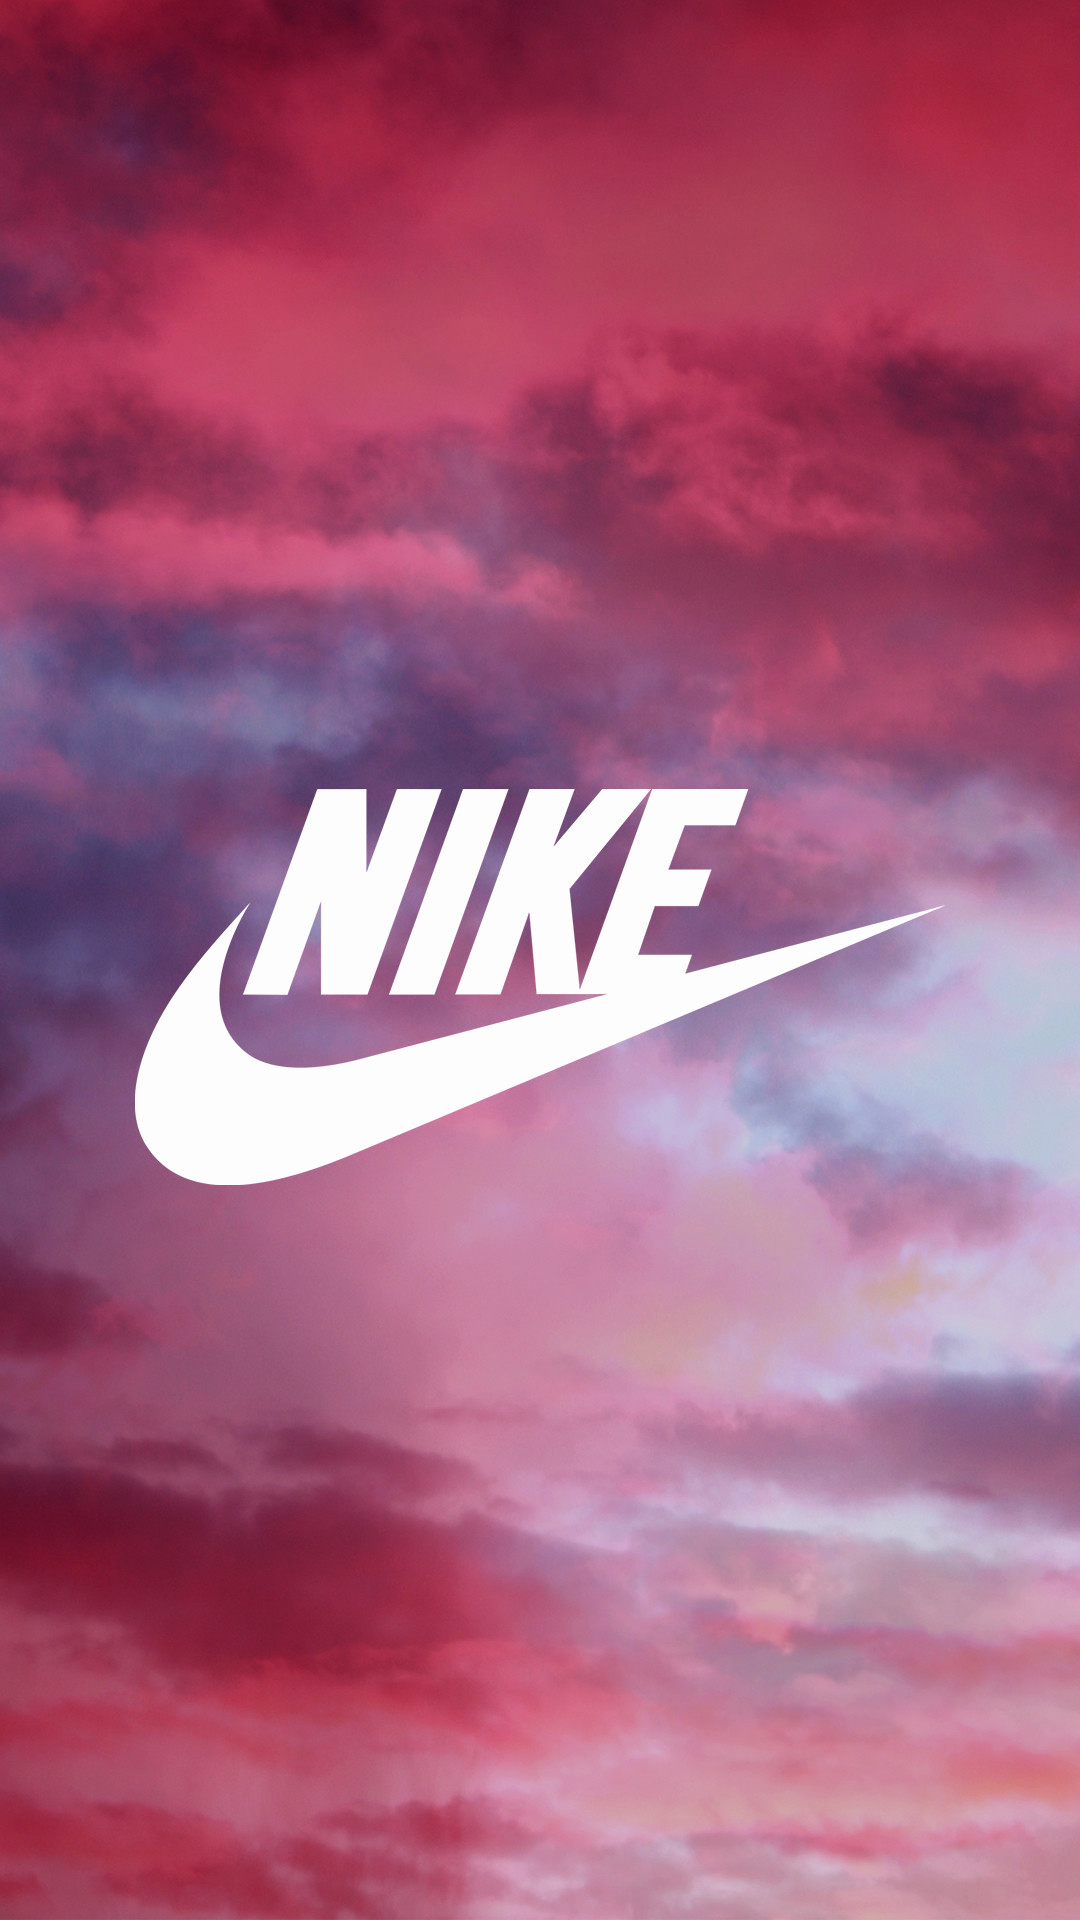 Hãy thưởng thức những hình nền Nike hồng dành cho tín đồ thời trang. Với đa dạng thiết kế và màu sắc tươi sáng, chúng sẽ làm tươi tắn màn hình điện thoại của bạn và giúp bạn thể hiện phong cách thời trang đầy sáng tạo.